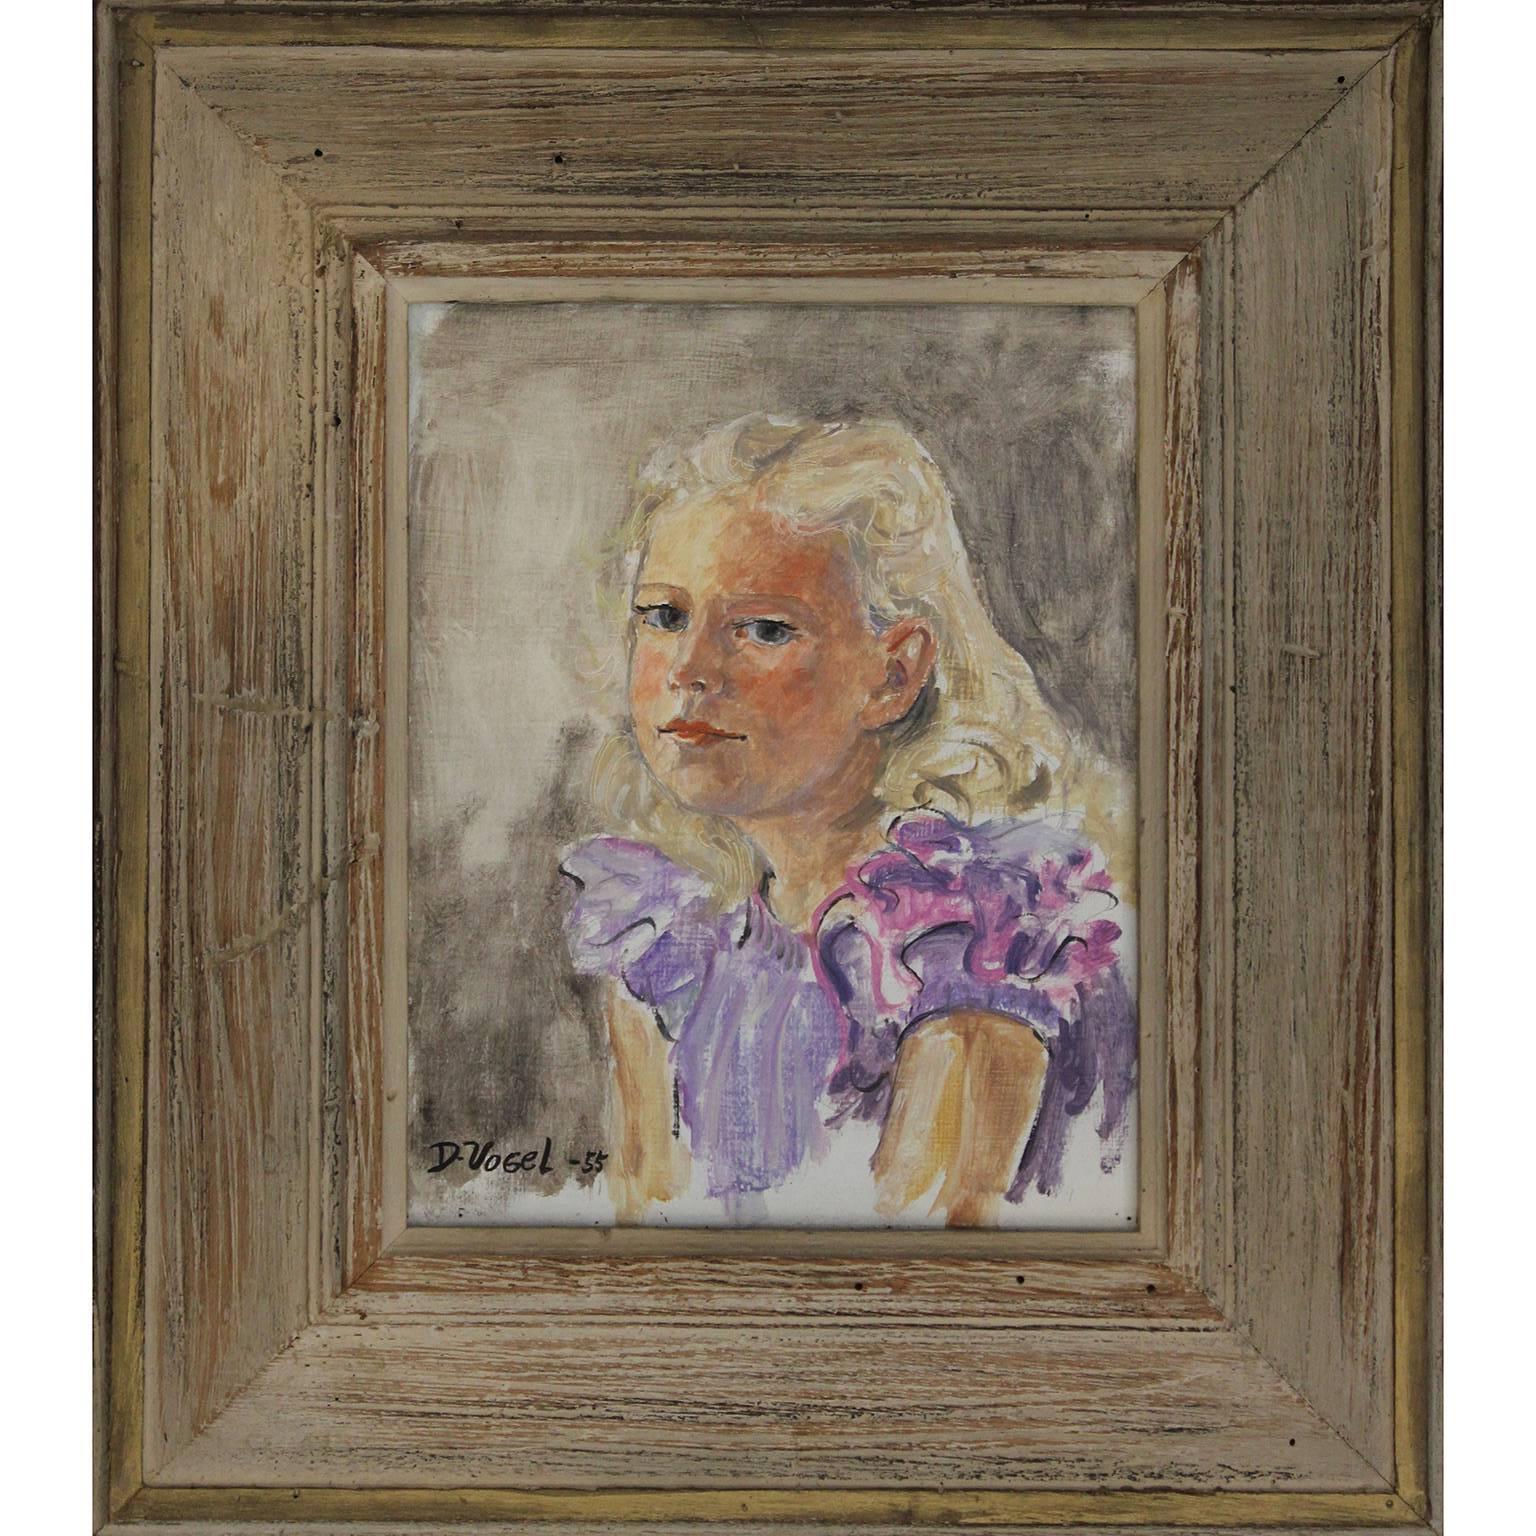 Donald Stanley Vogel Portrait Painting - 1955 - Donald Vogel Young Girl Portrait